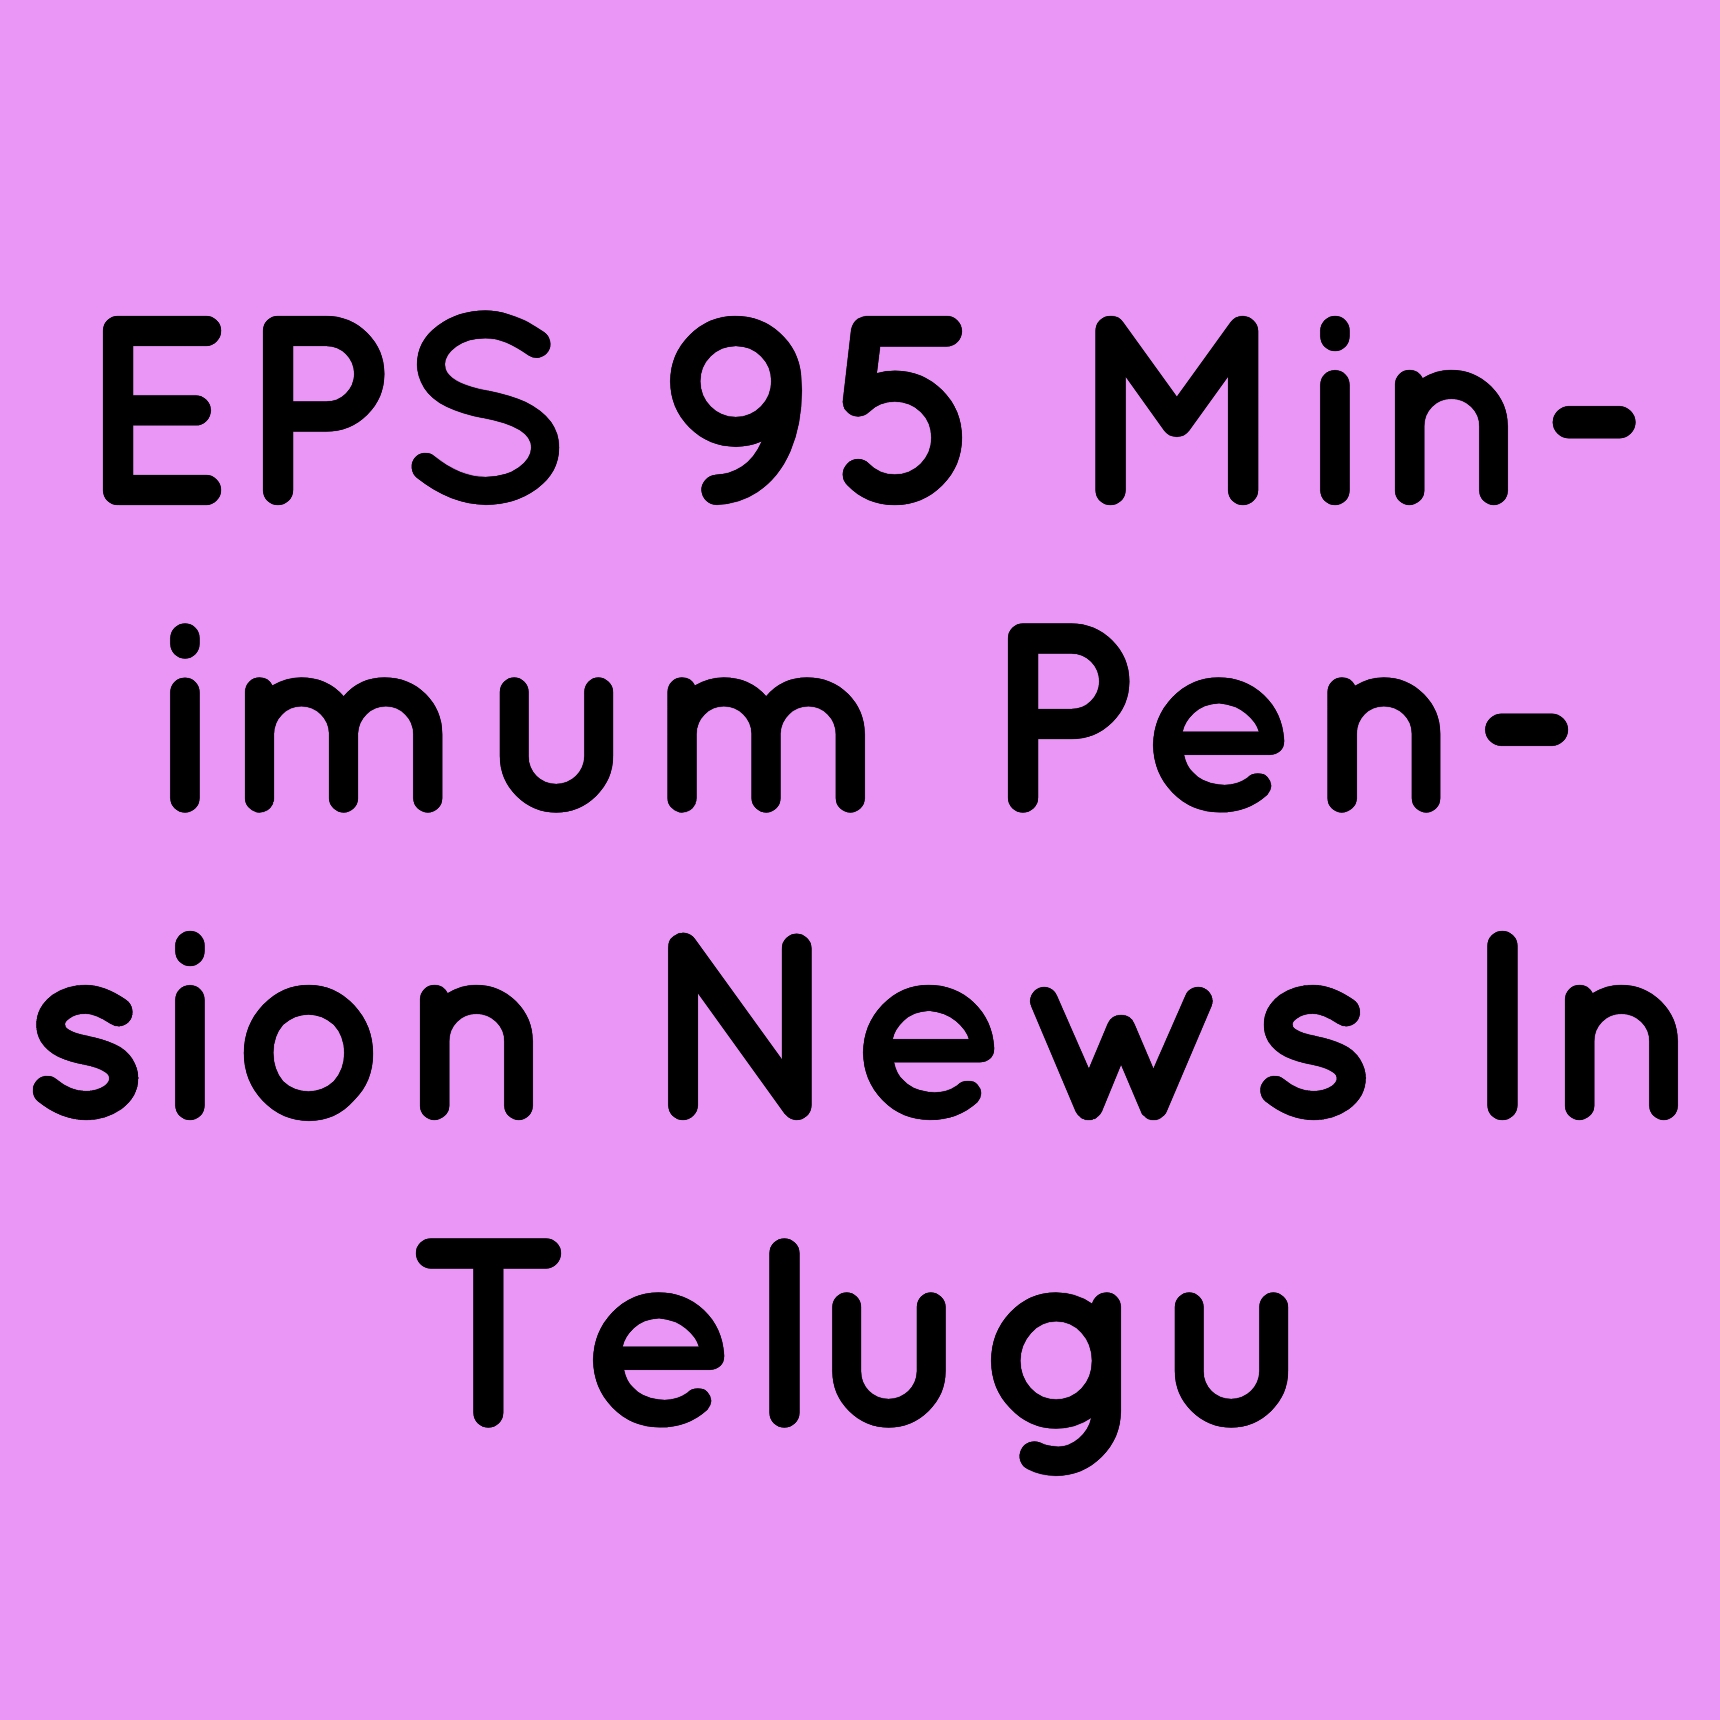 EPS 95 Minimum Pension News Telugu